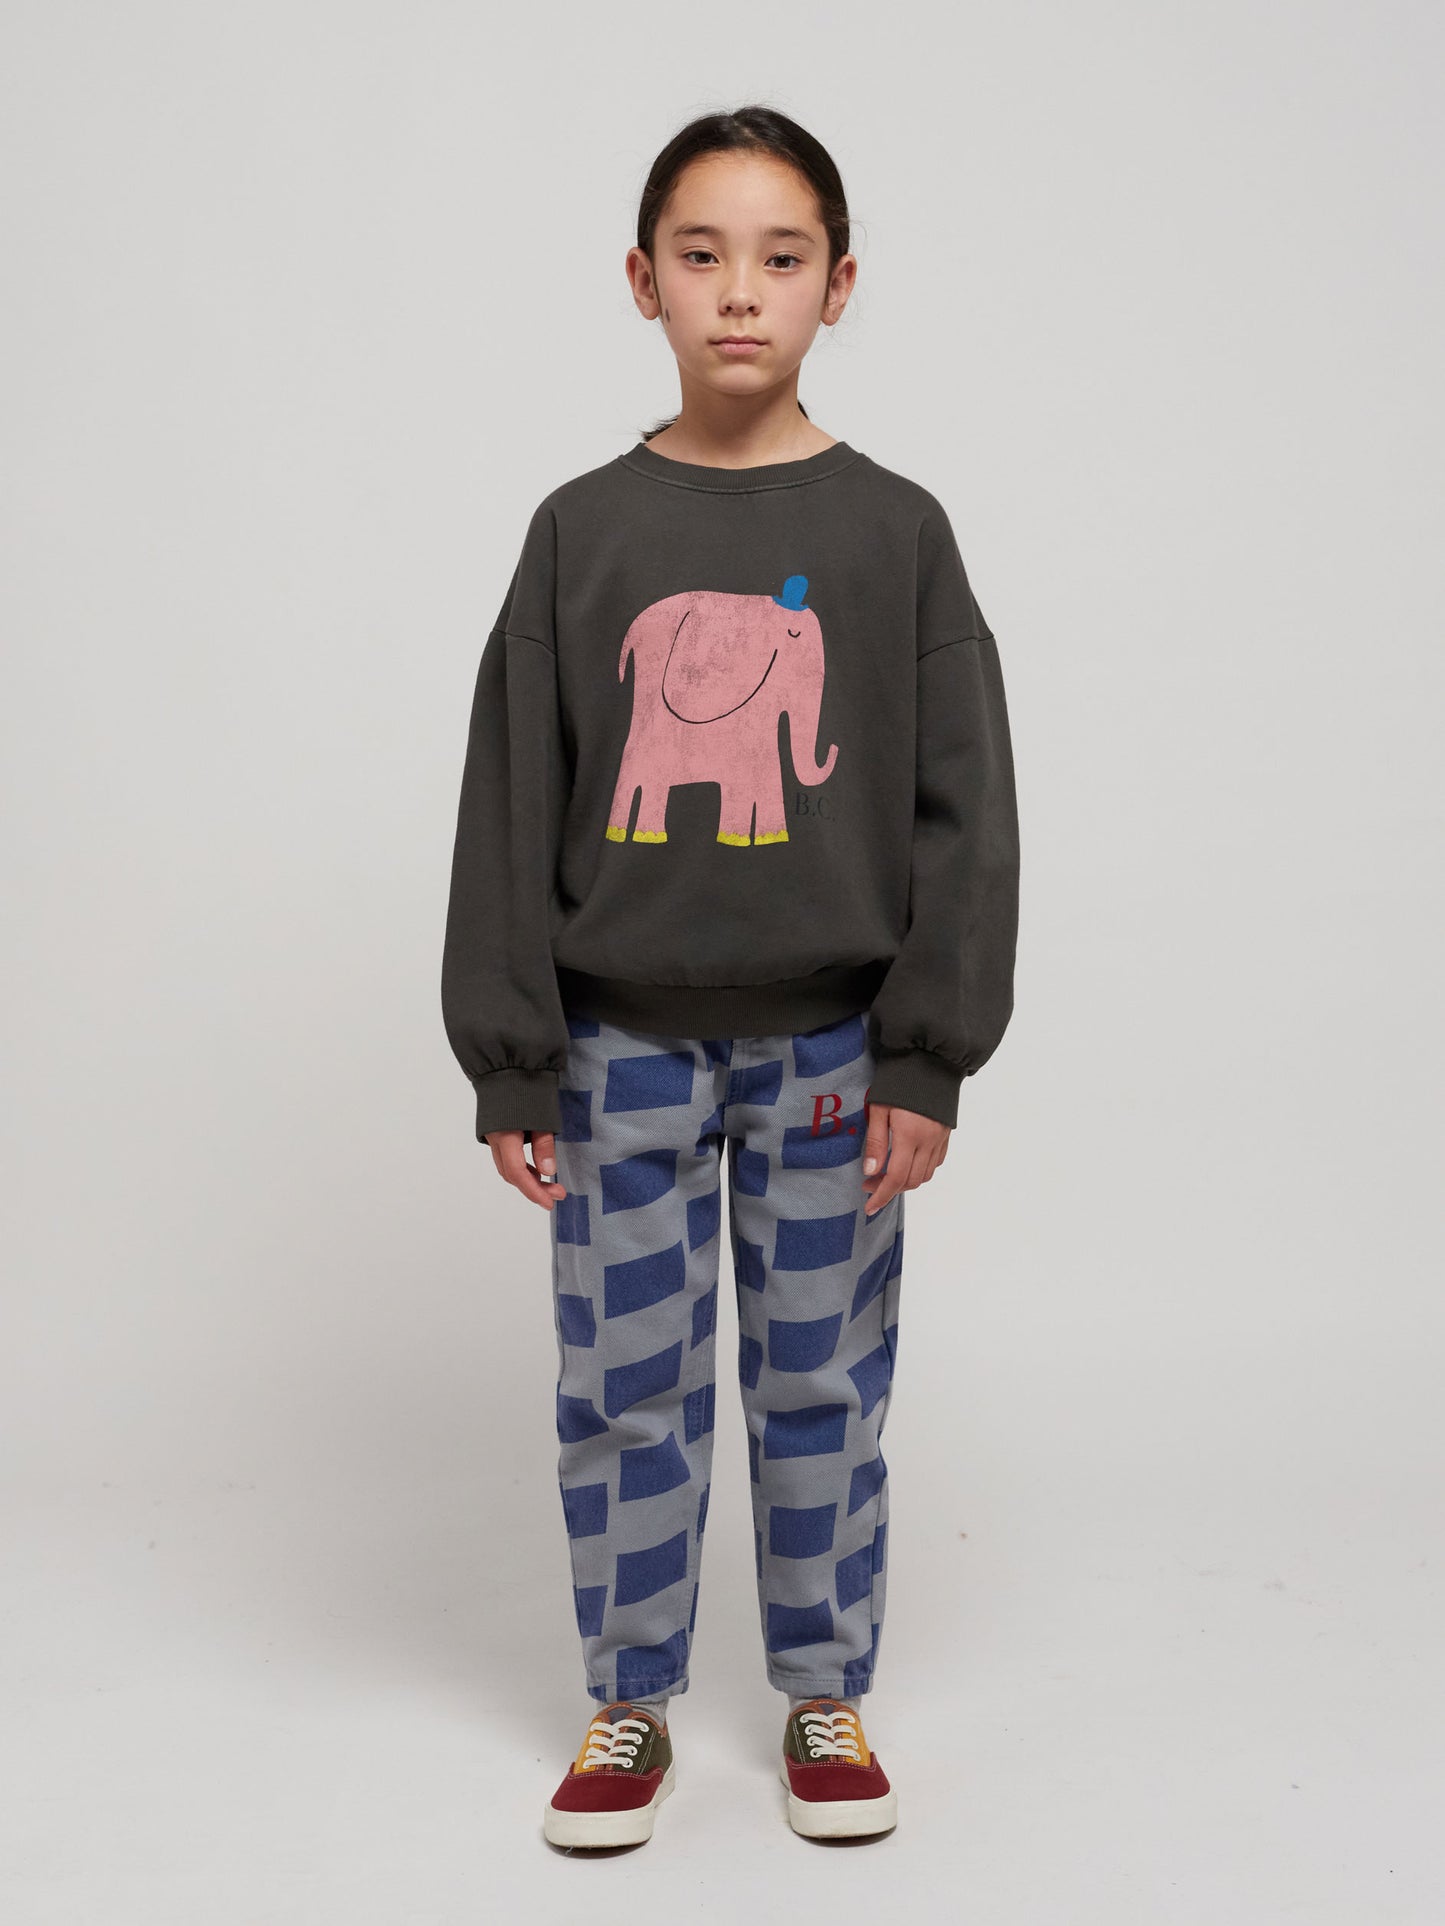 The Elephant sweatshirt